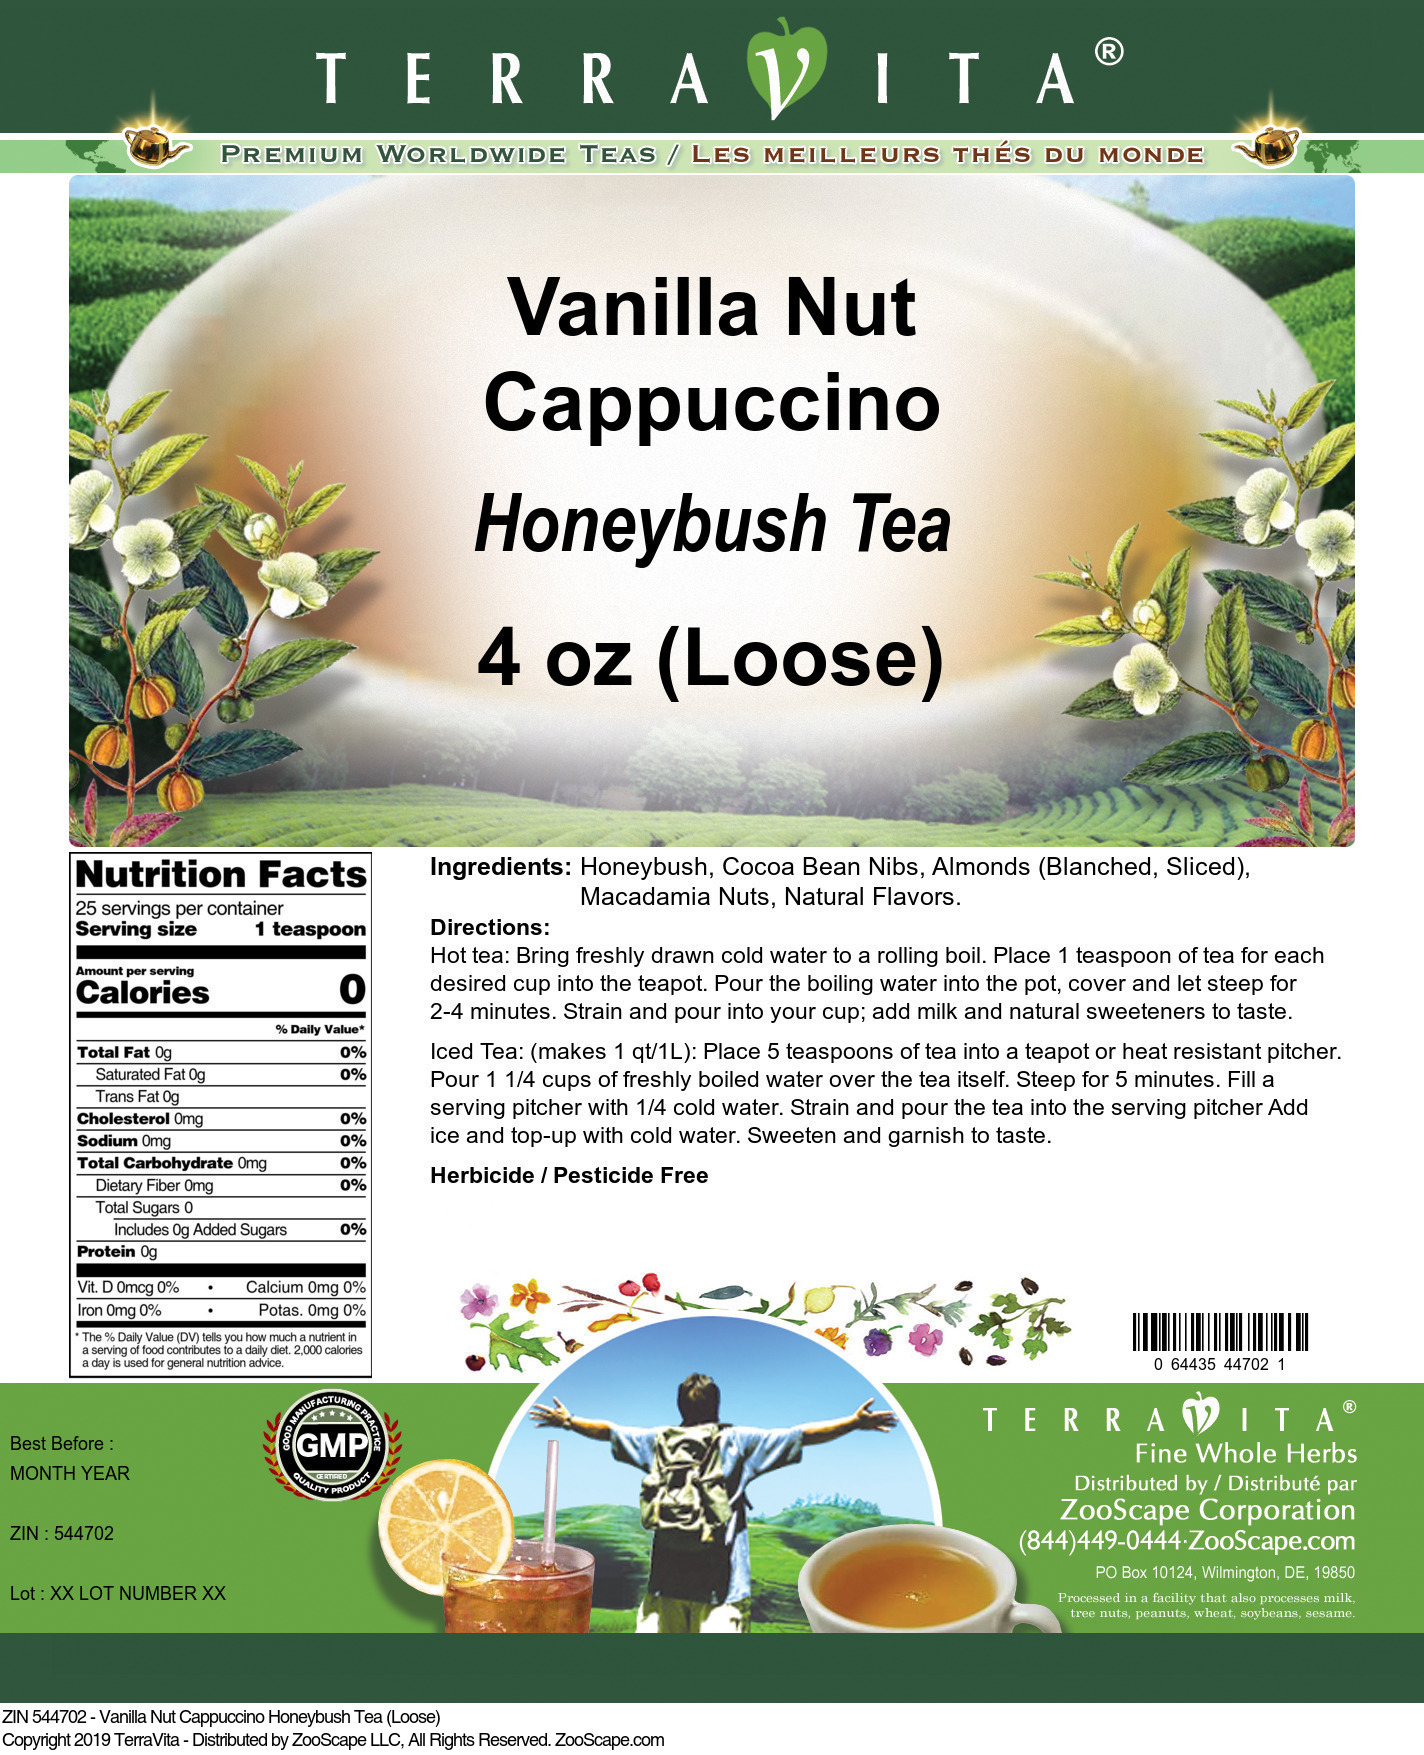 Vanilla Nut Cappuccino Honeybush Tea (Loose) - Label